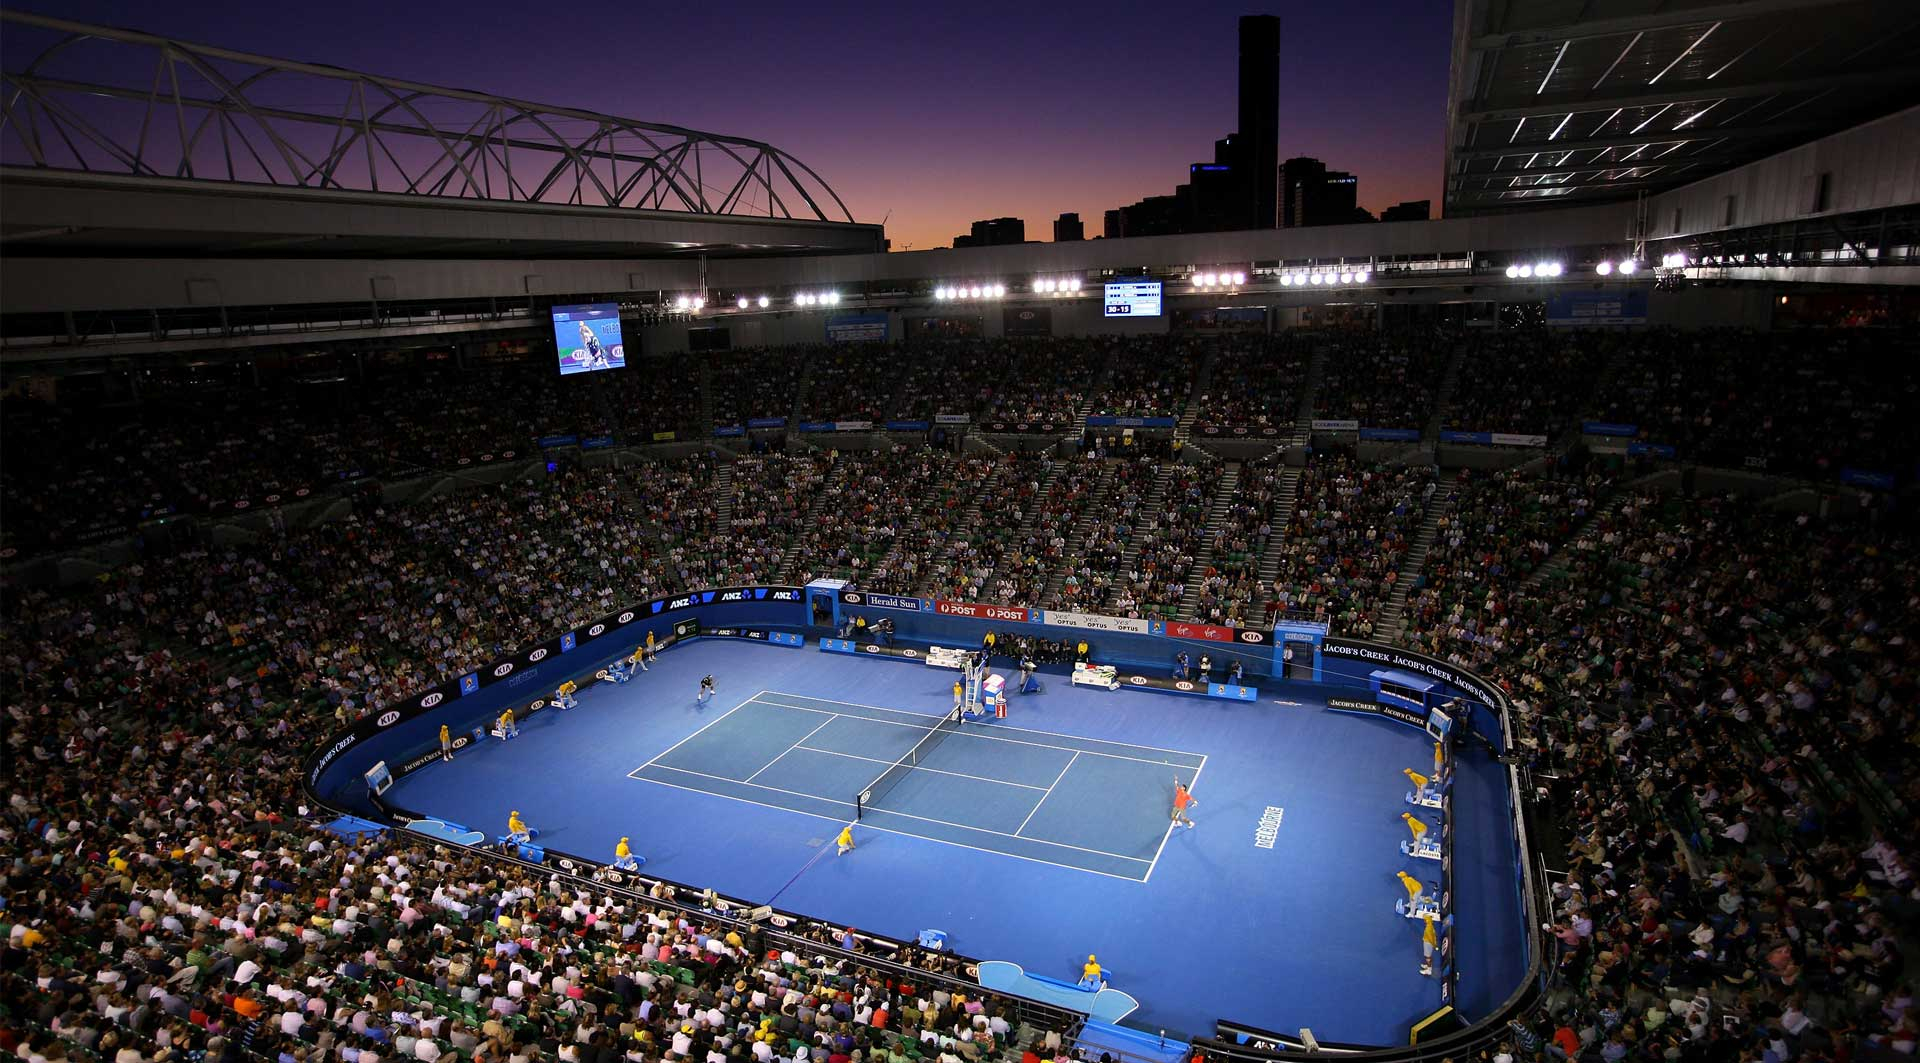 Australian Open and Tennis Australia